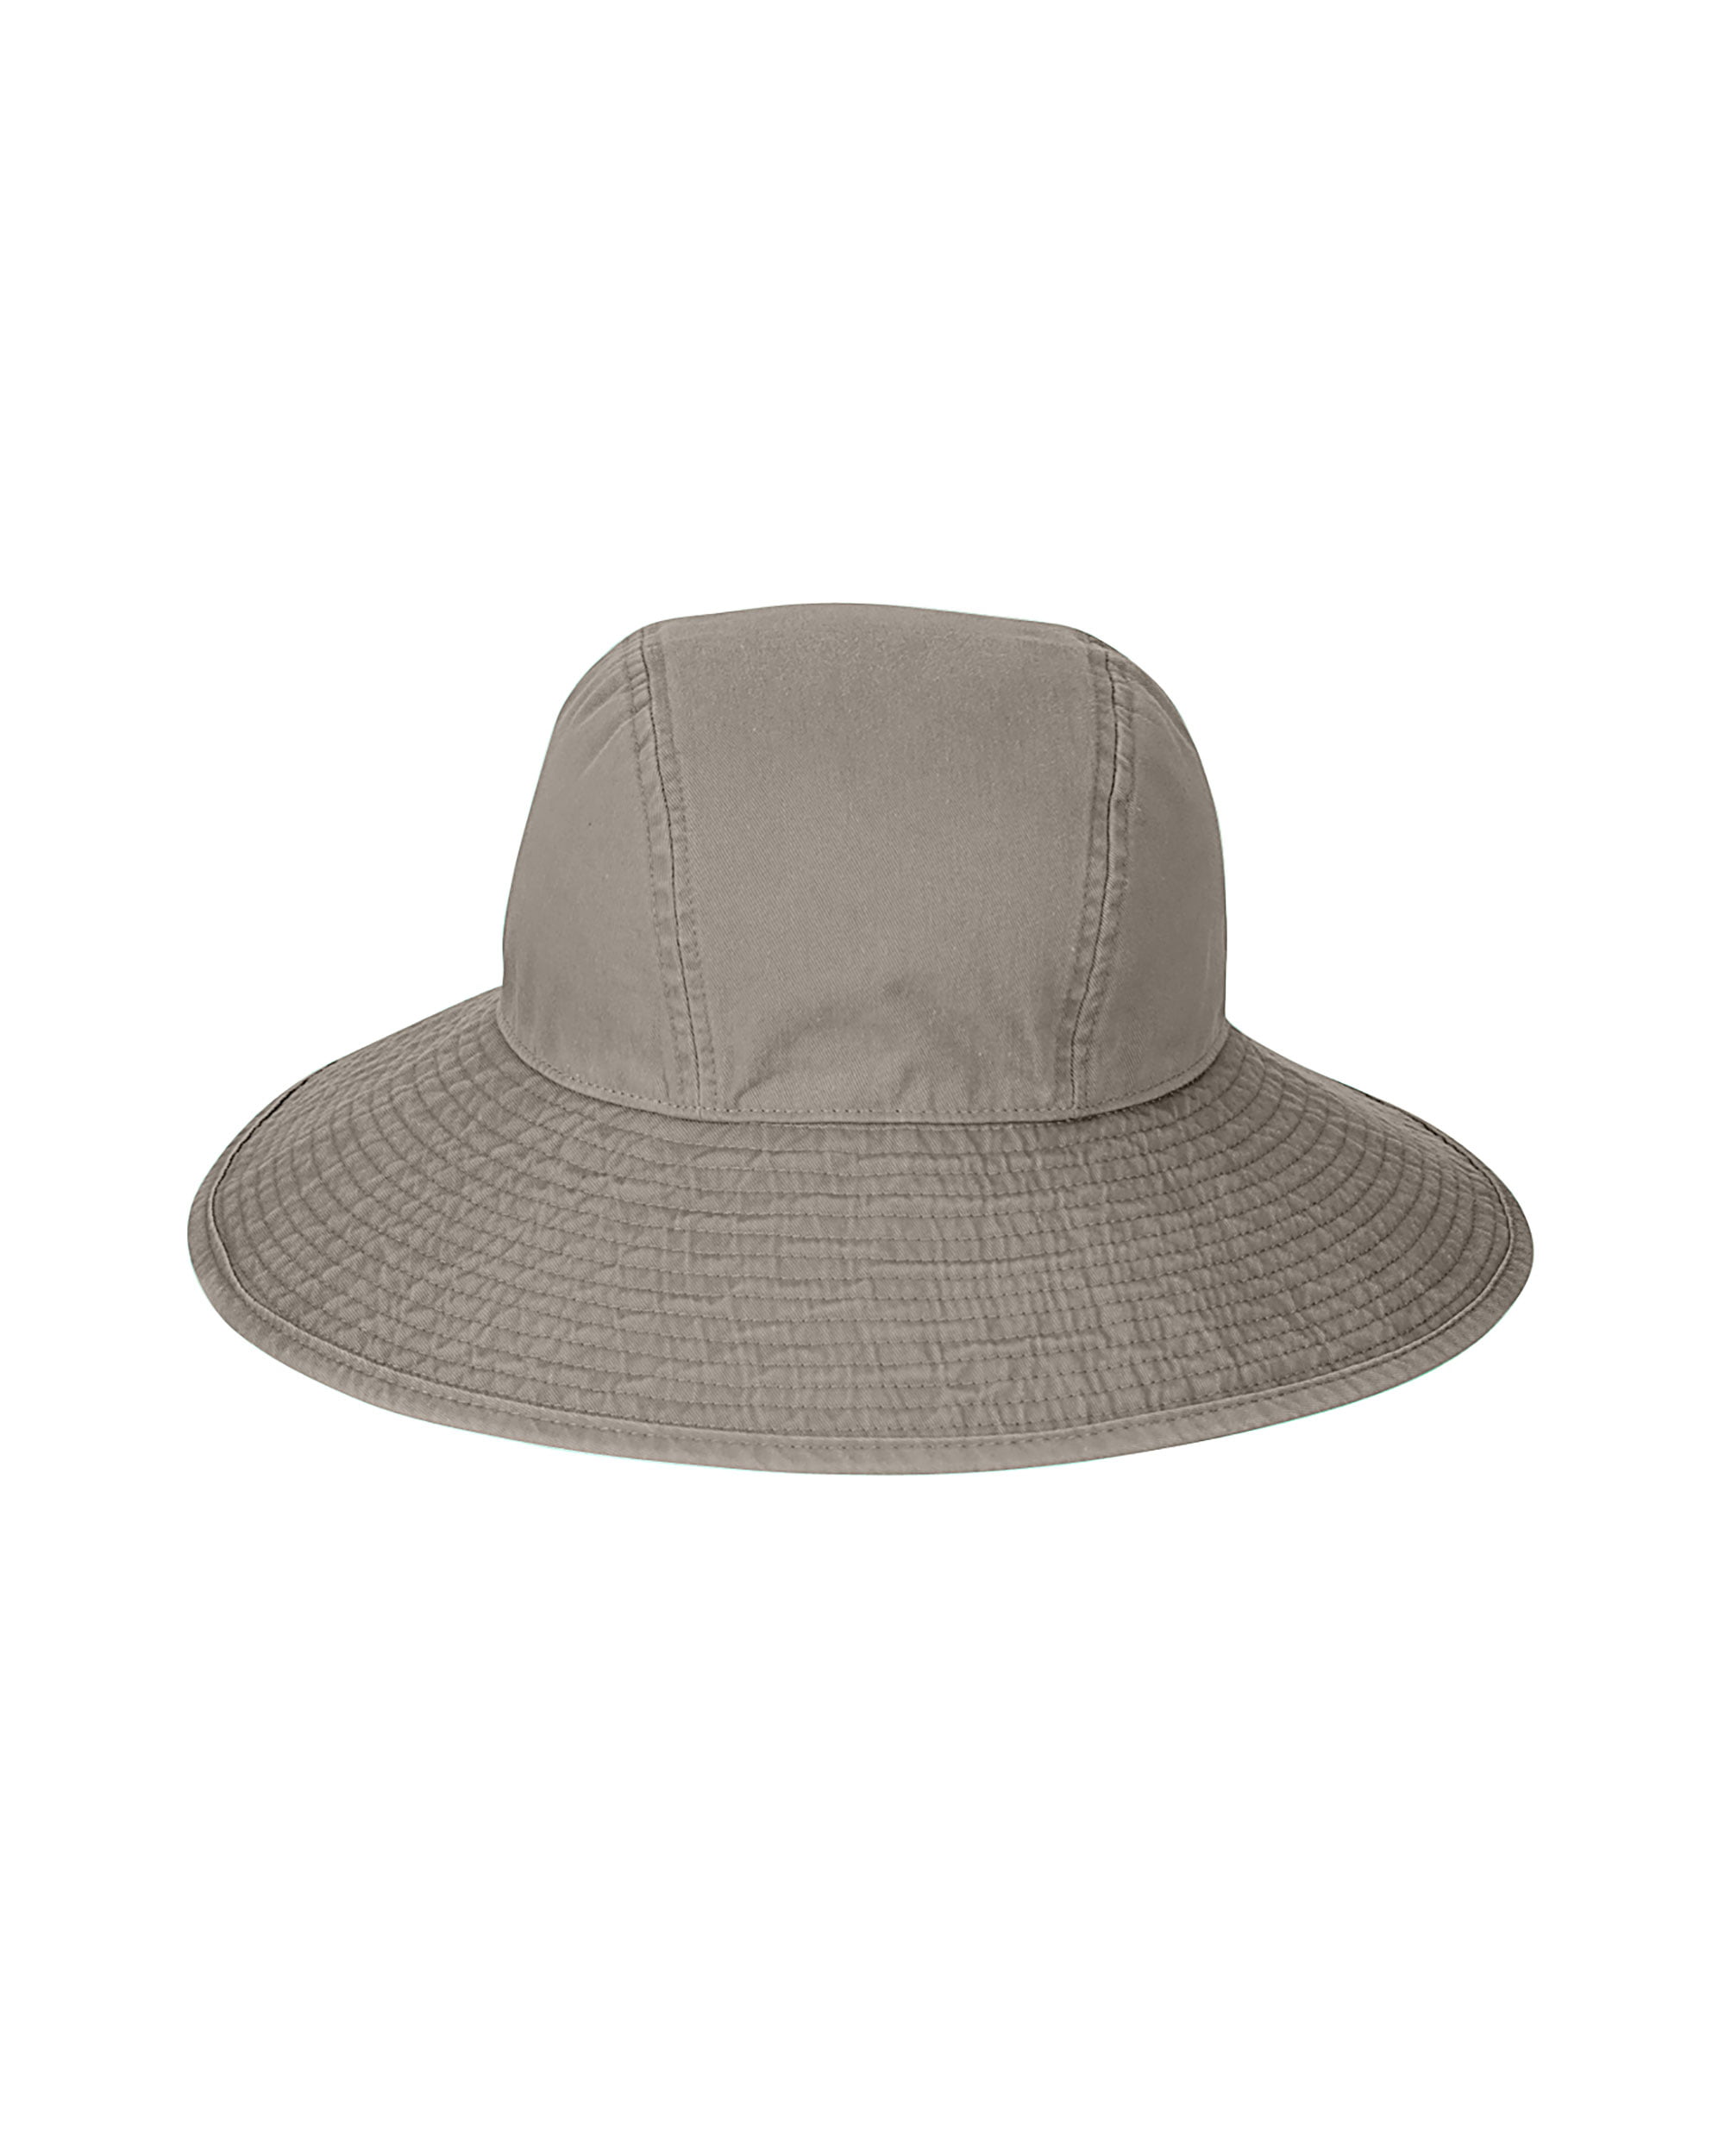 Adams Women's Sea Breeze Floppy Hat, Style SL101 